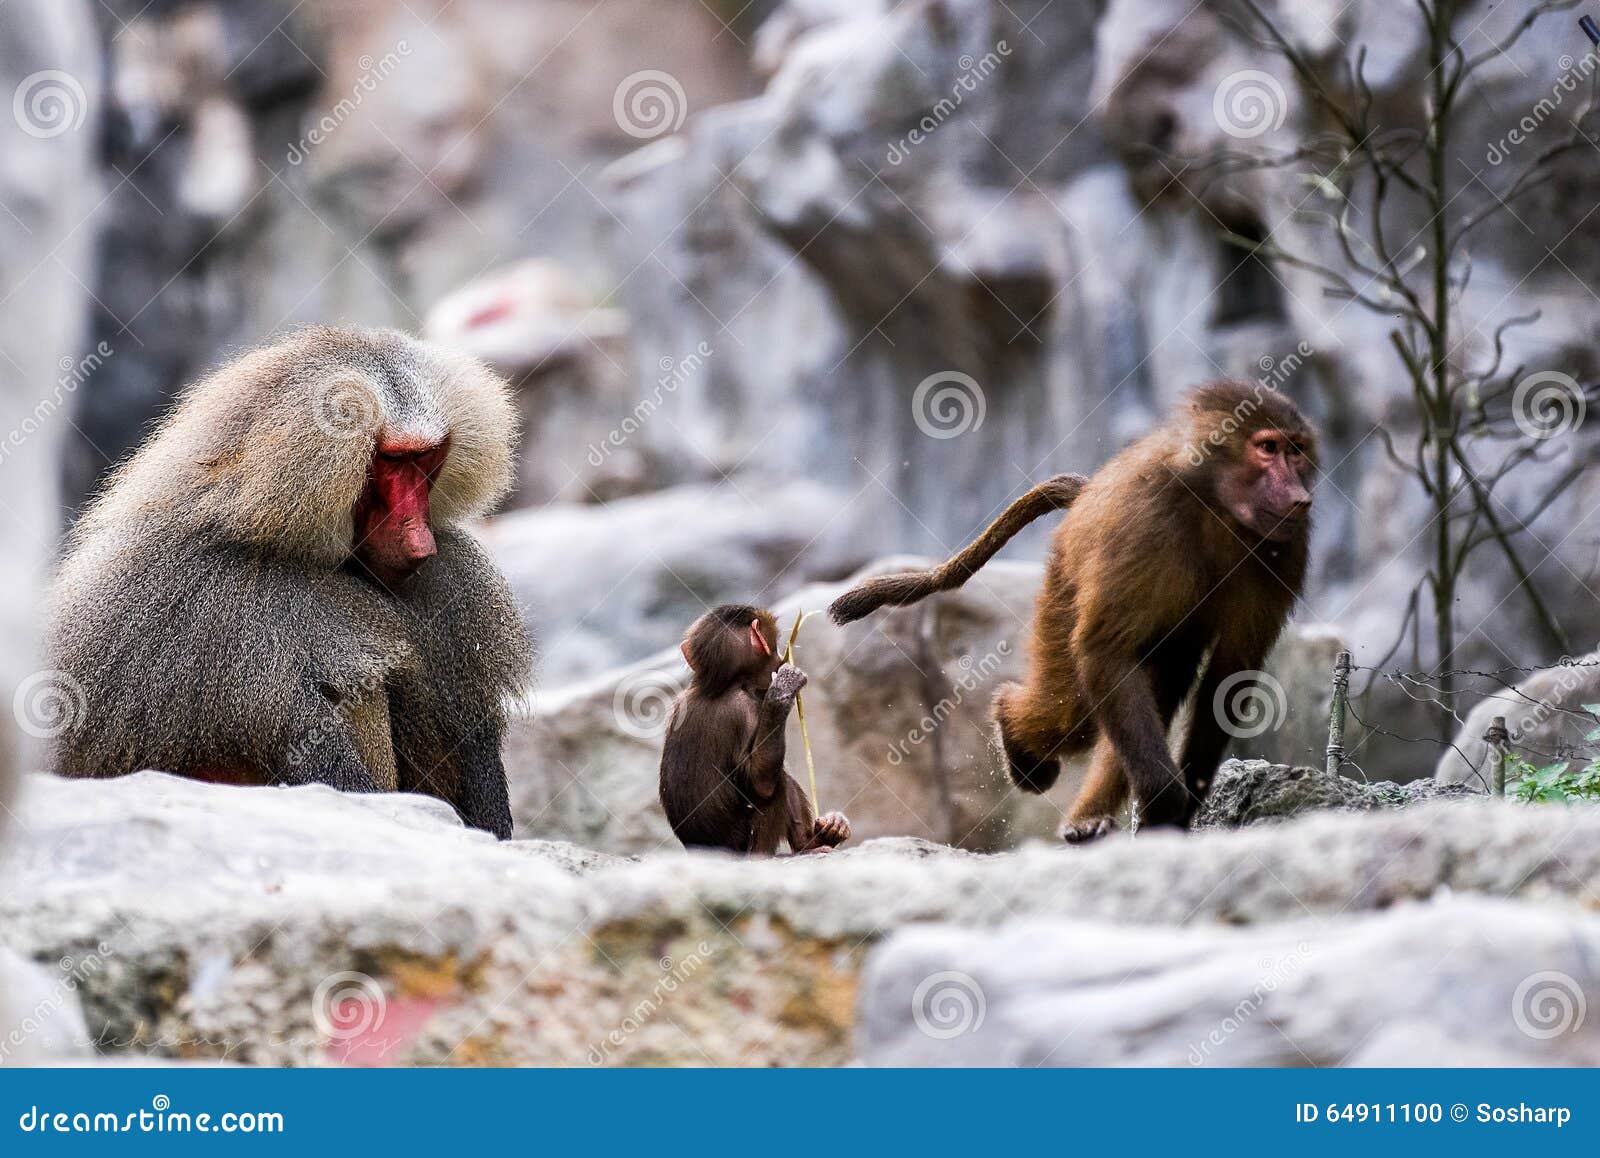 Monkey Year stock photo. Image of playful, mountains 64911100